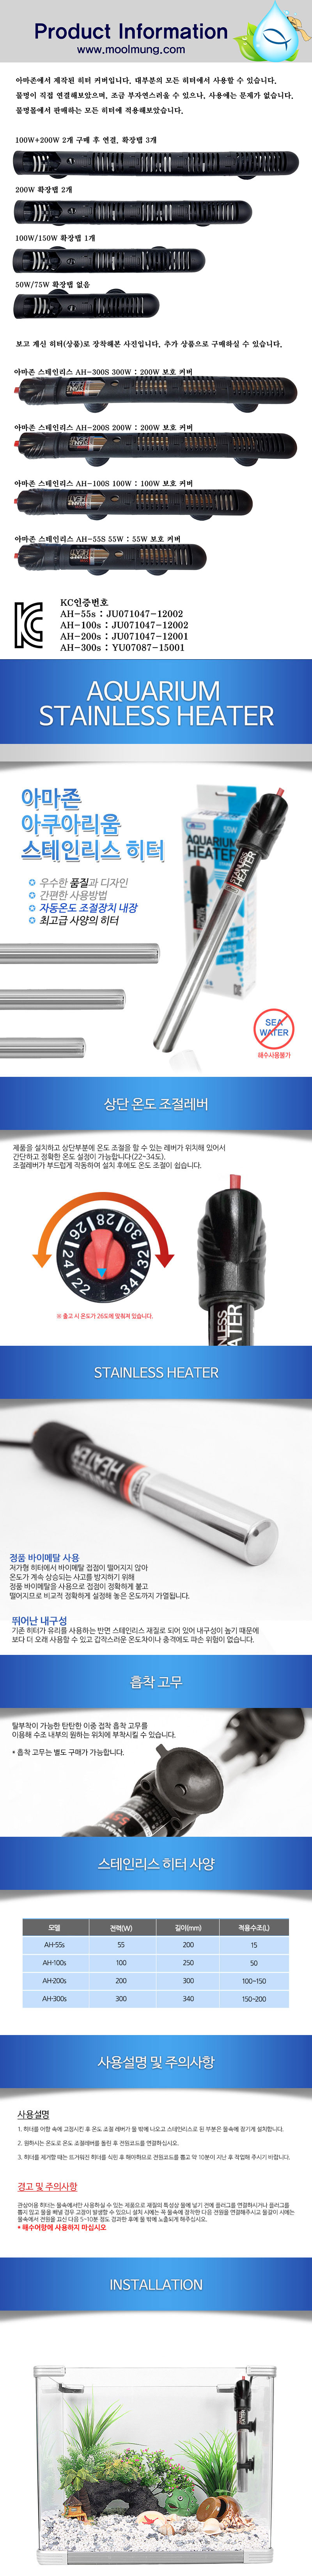 Amazon_stainless_heater_D.jpg